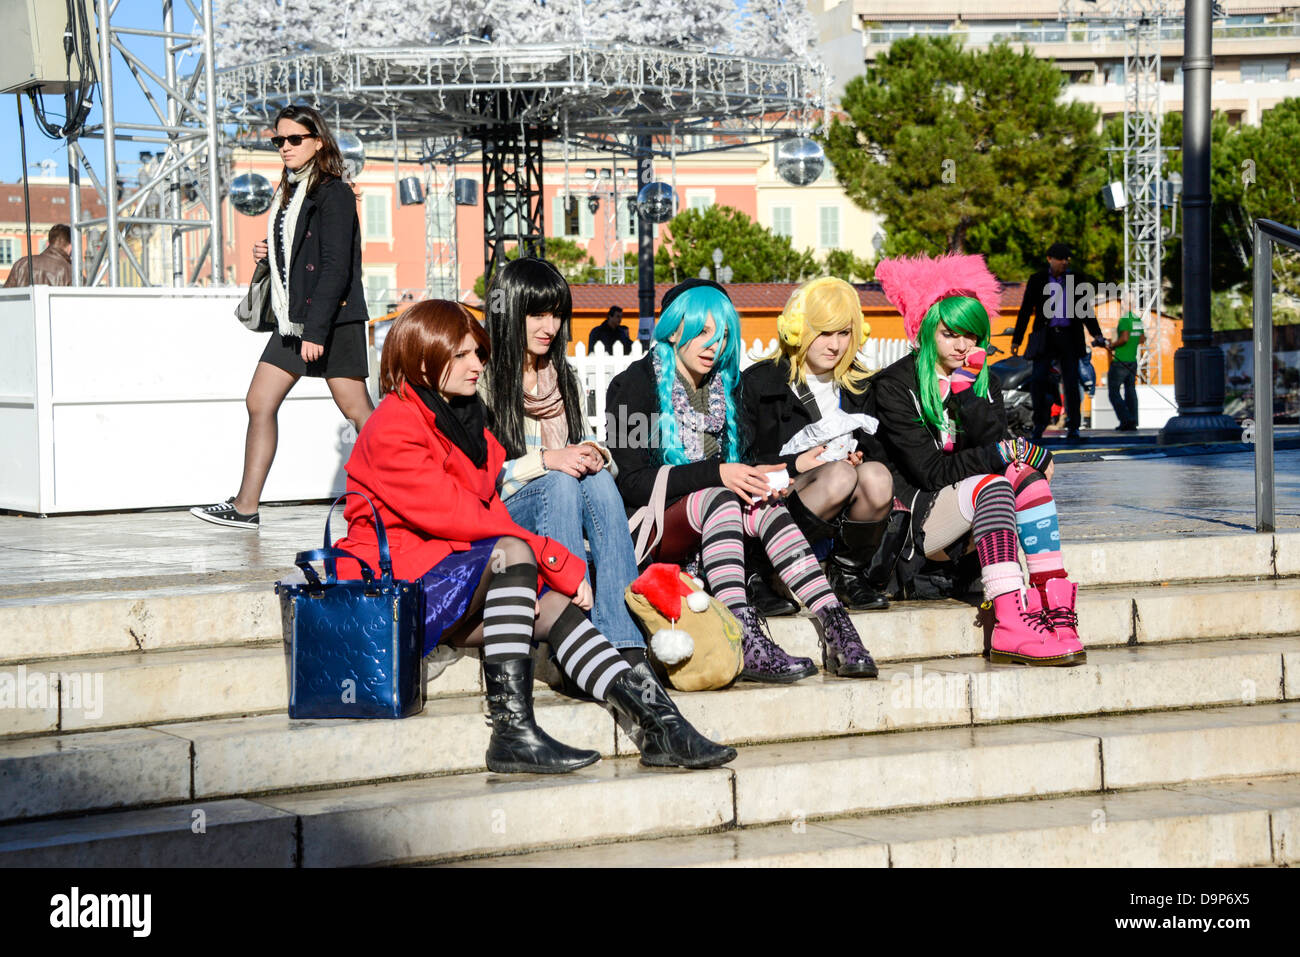 Les jeunes filles habillé en punk rock avec des perruques multicolores à Nice France Banque D'Images